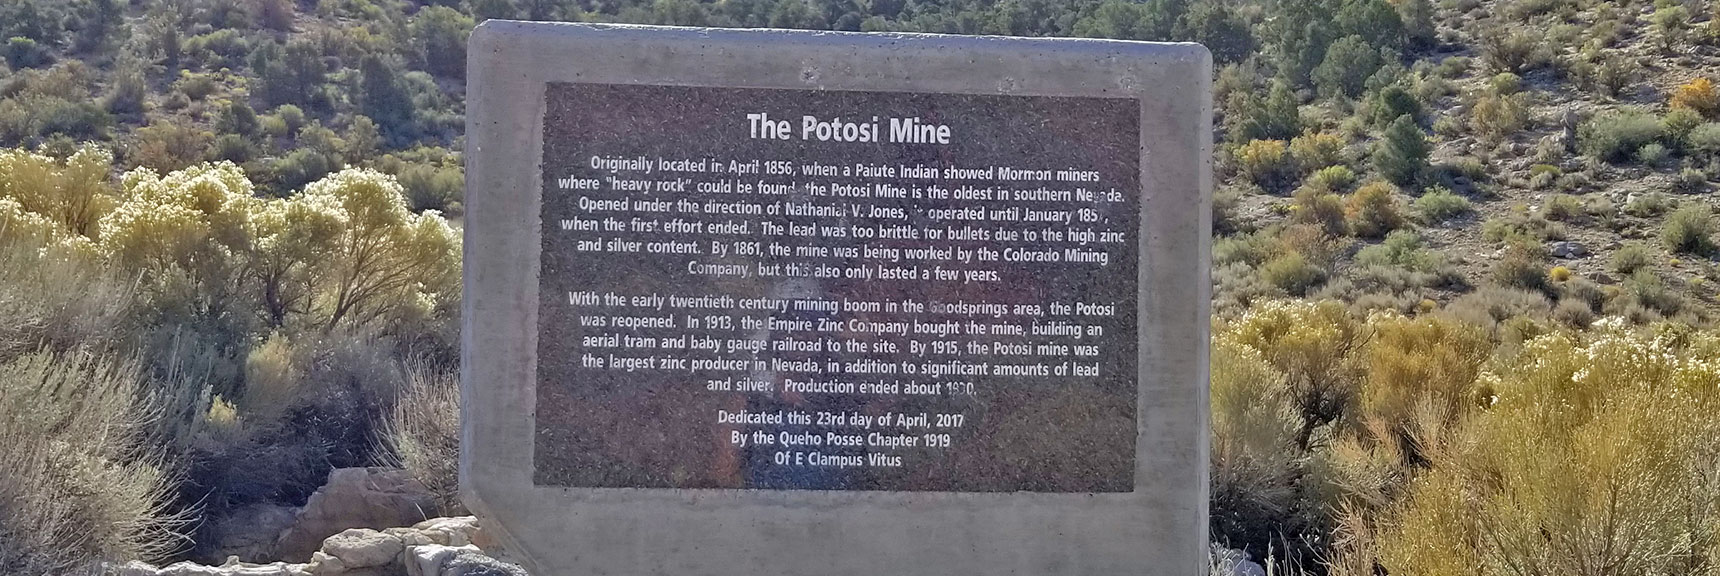 Potosi Spring Area: Old Potosi Mine Site Interpretive Sign | Potosi Mountain Northwestern Approach, Spring Mountains, Nevada